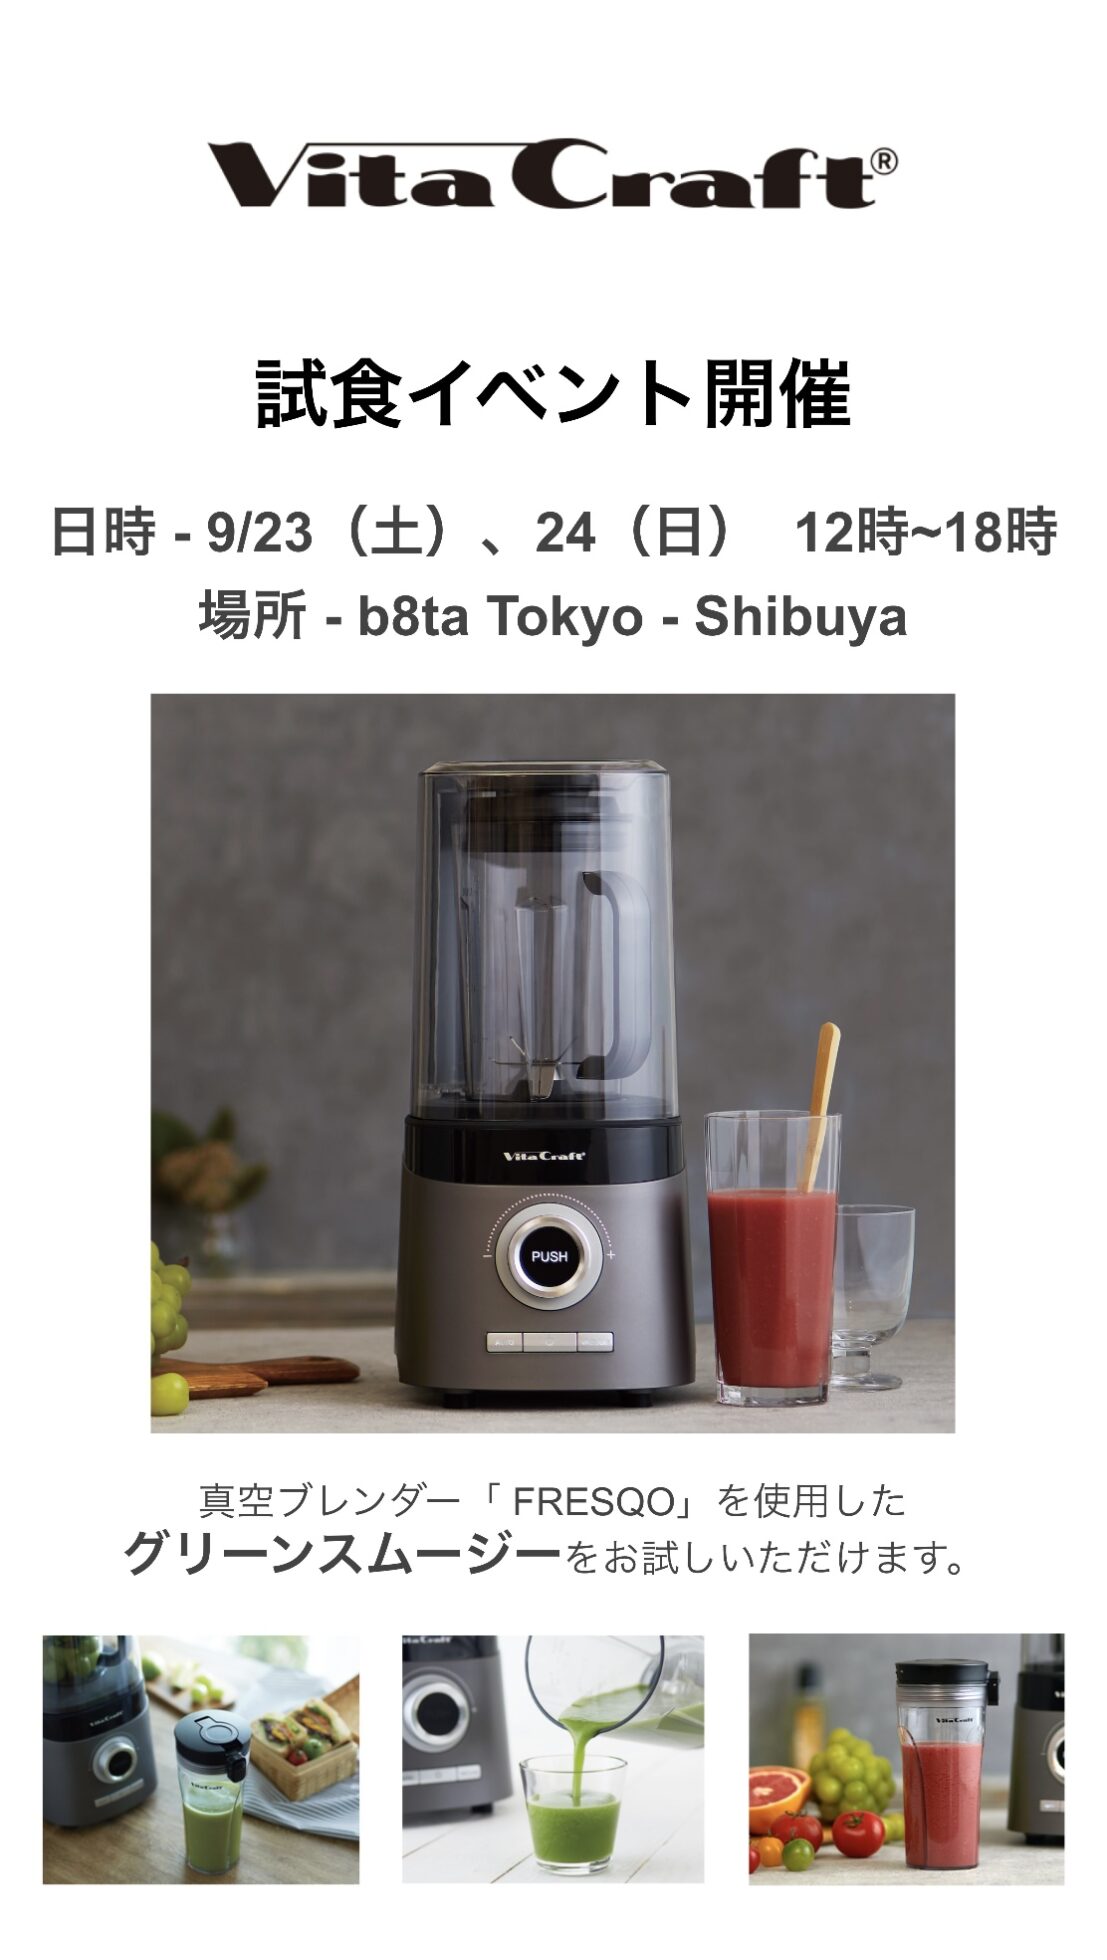 ビタクラフト 真空ブレンダー FRESQO 試飲イベント - b8ta Japan